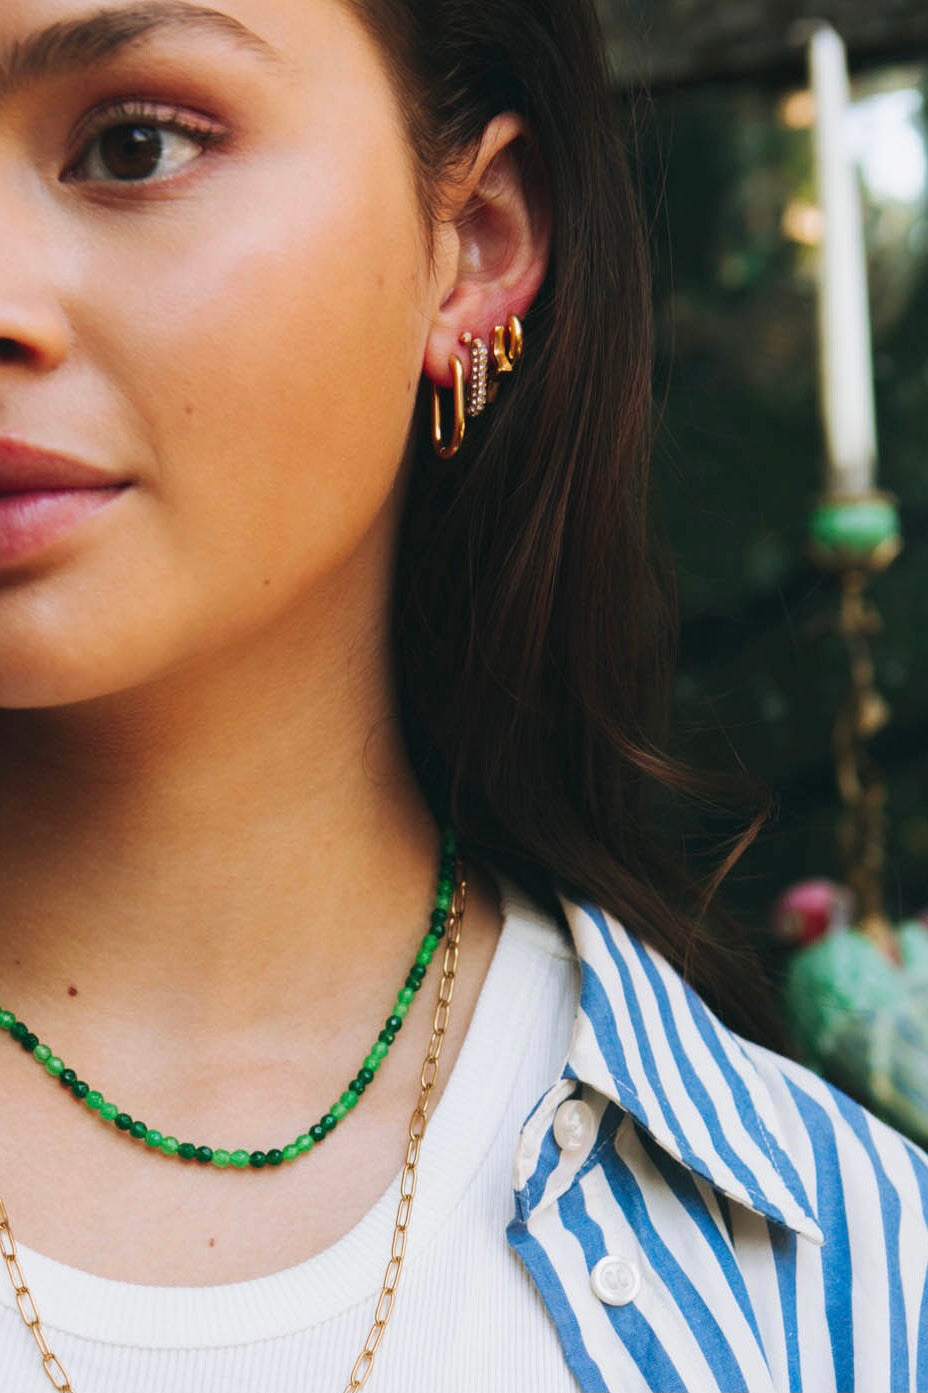 Star earrings ~ 2 pcs